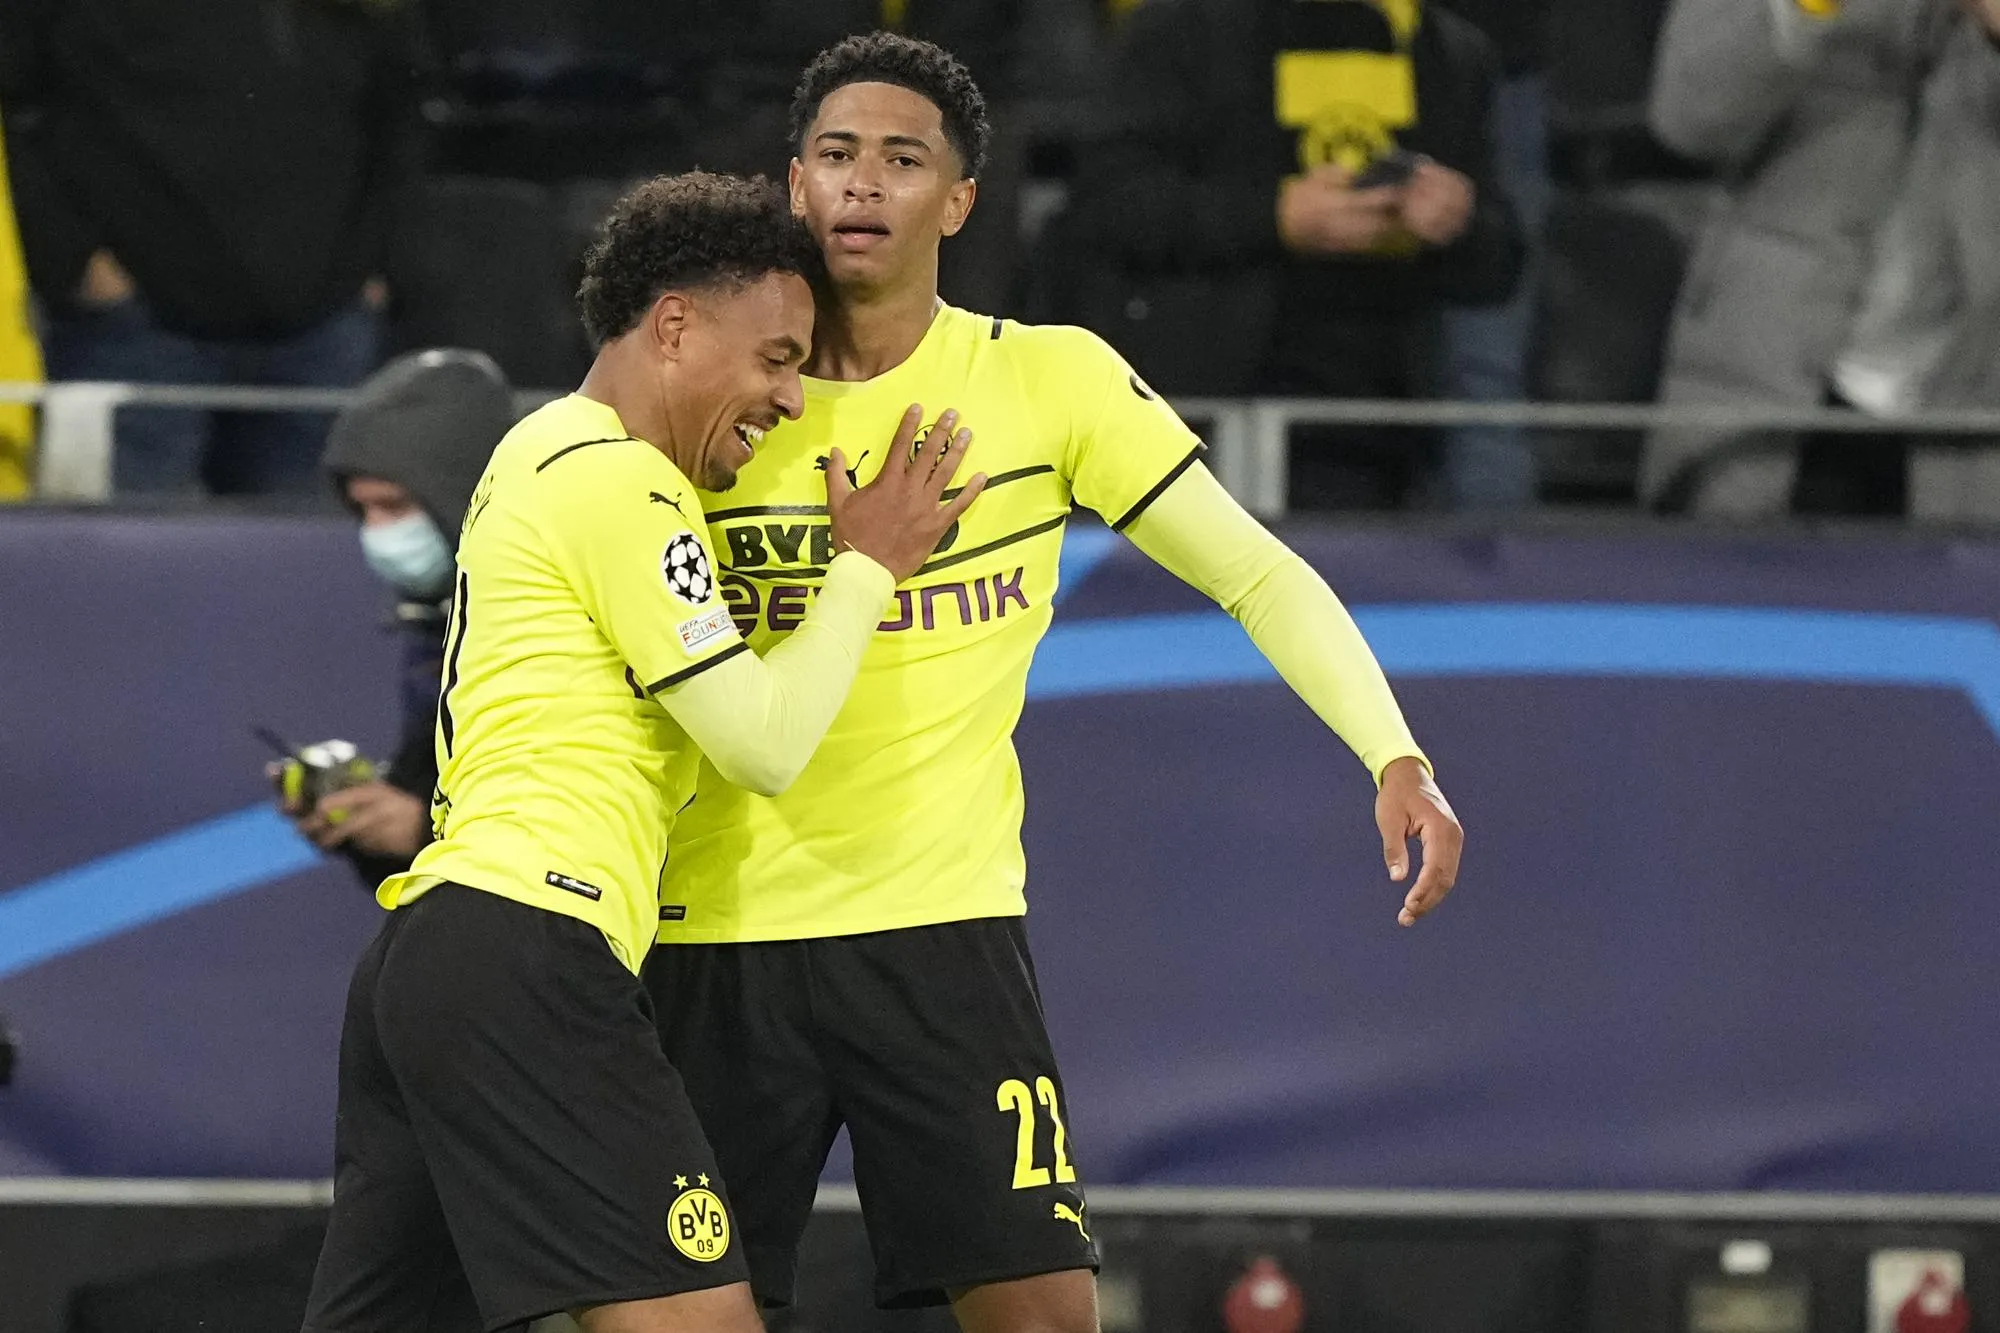 Diễn biến chính trận Dortmund 1-0 Sporting Lisbon - Cup C1 2021/22